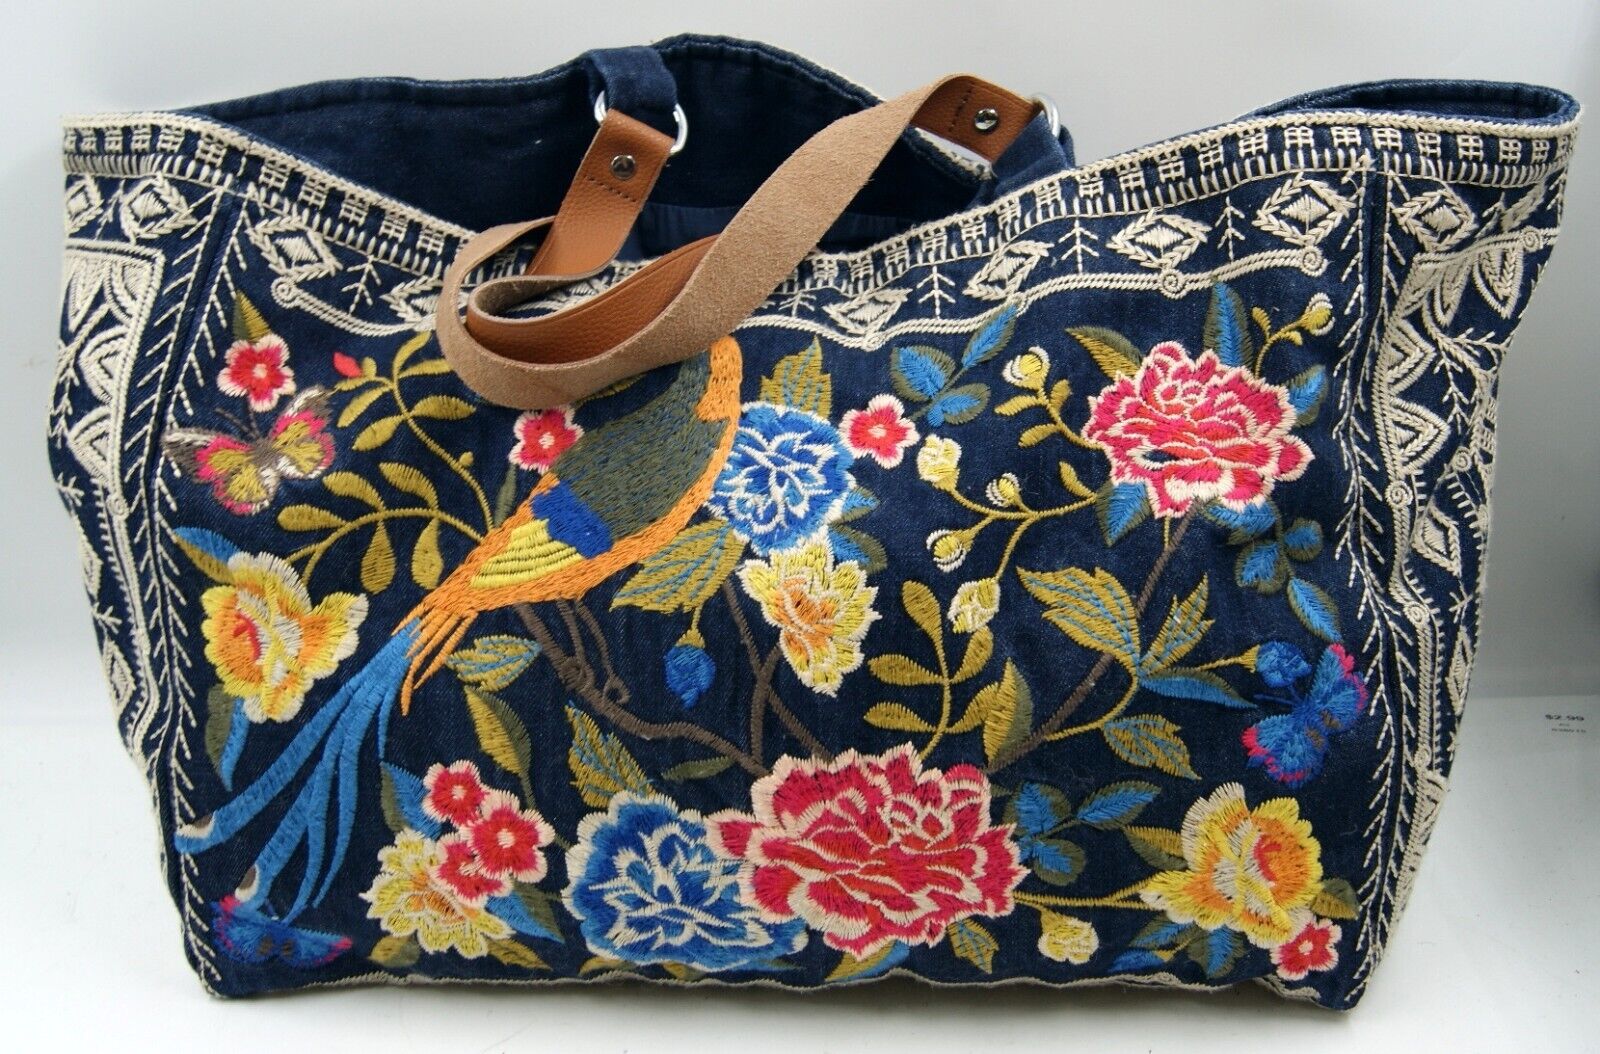 Johnny Was Womens Handbag Navy Denim Floral Embroidered Cotton Shoulder Tote Bag